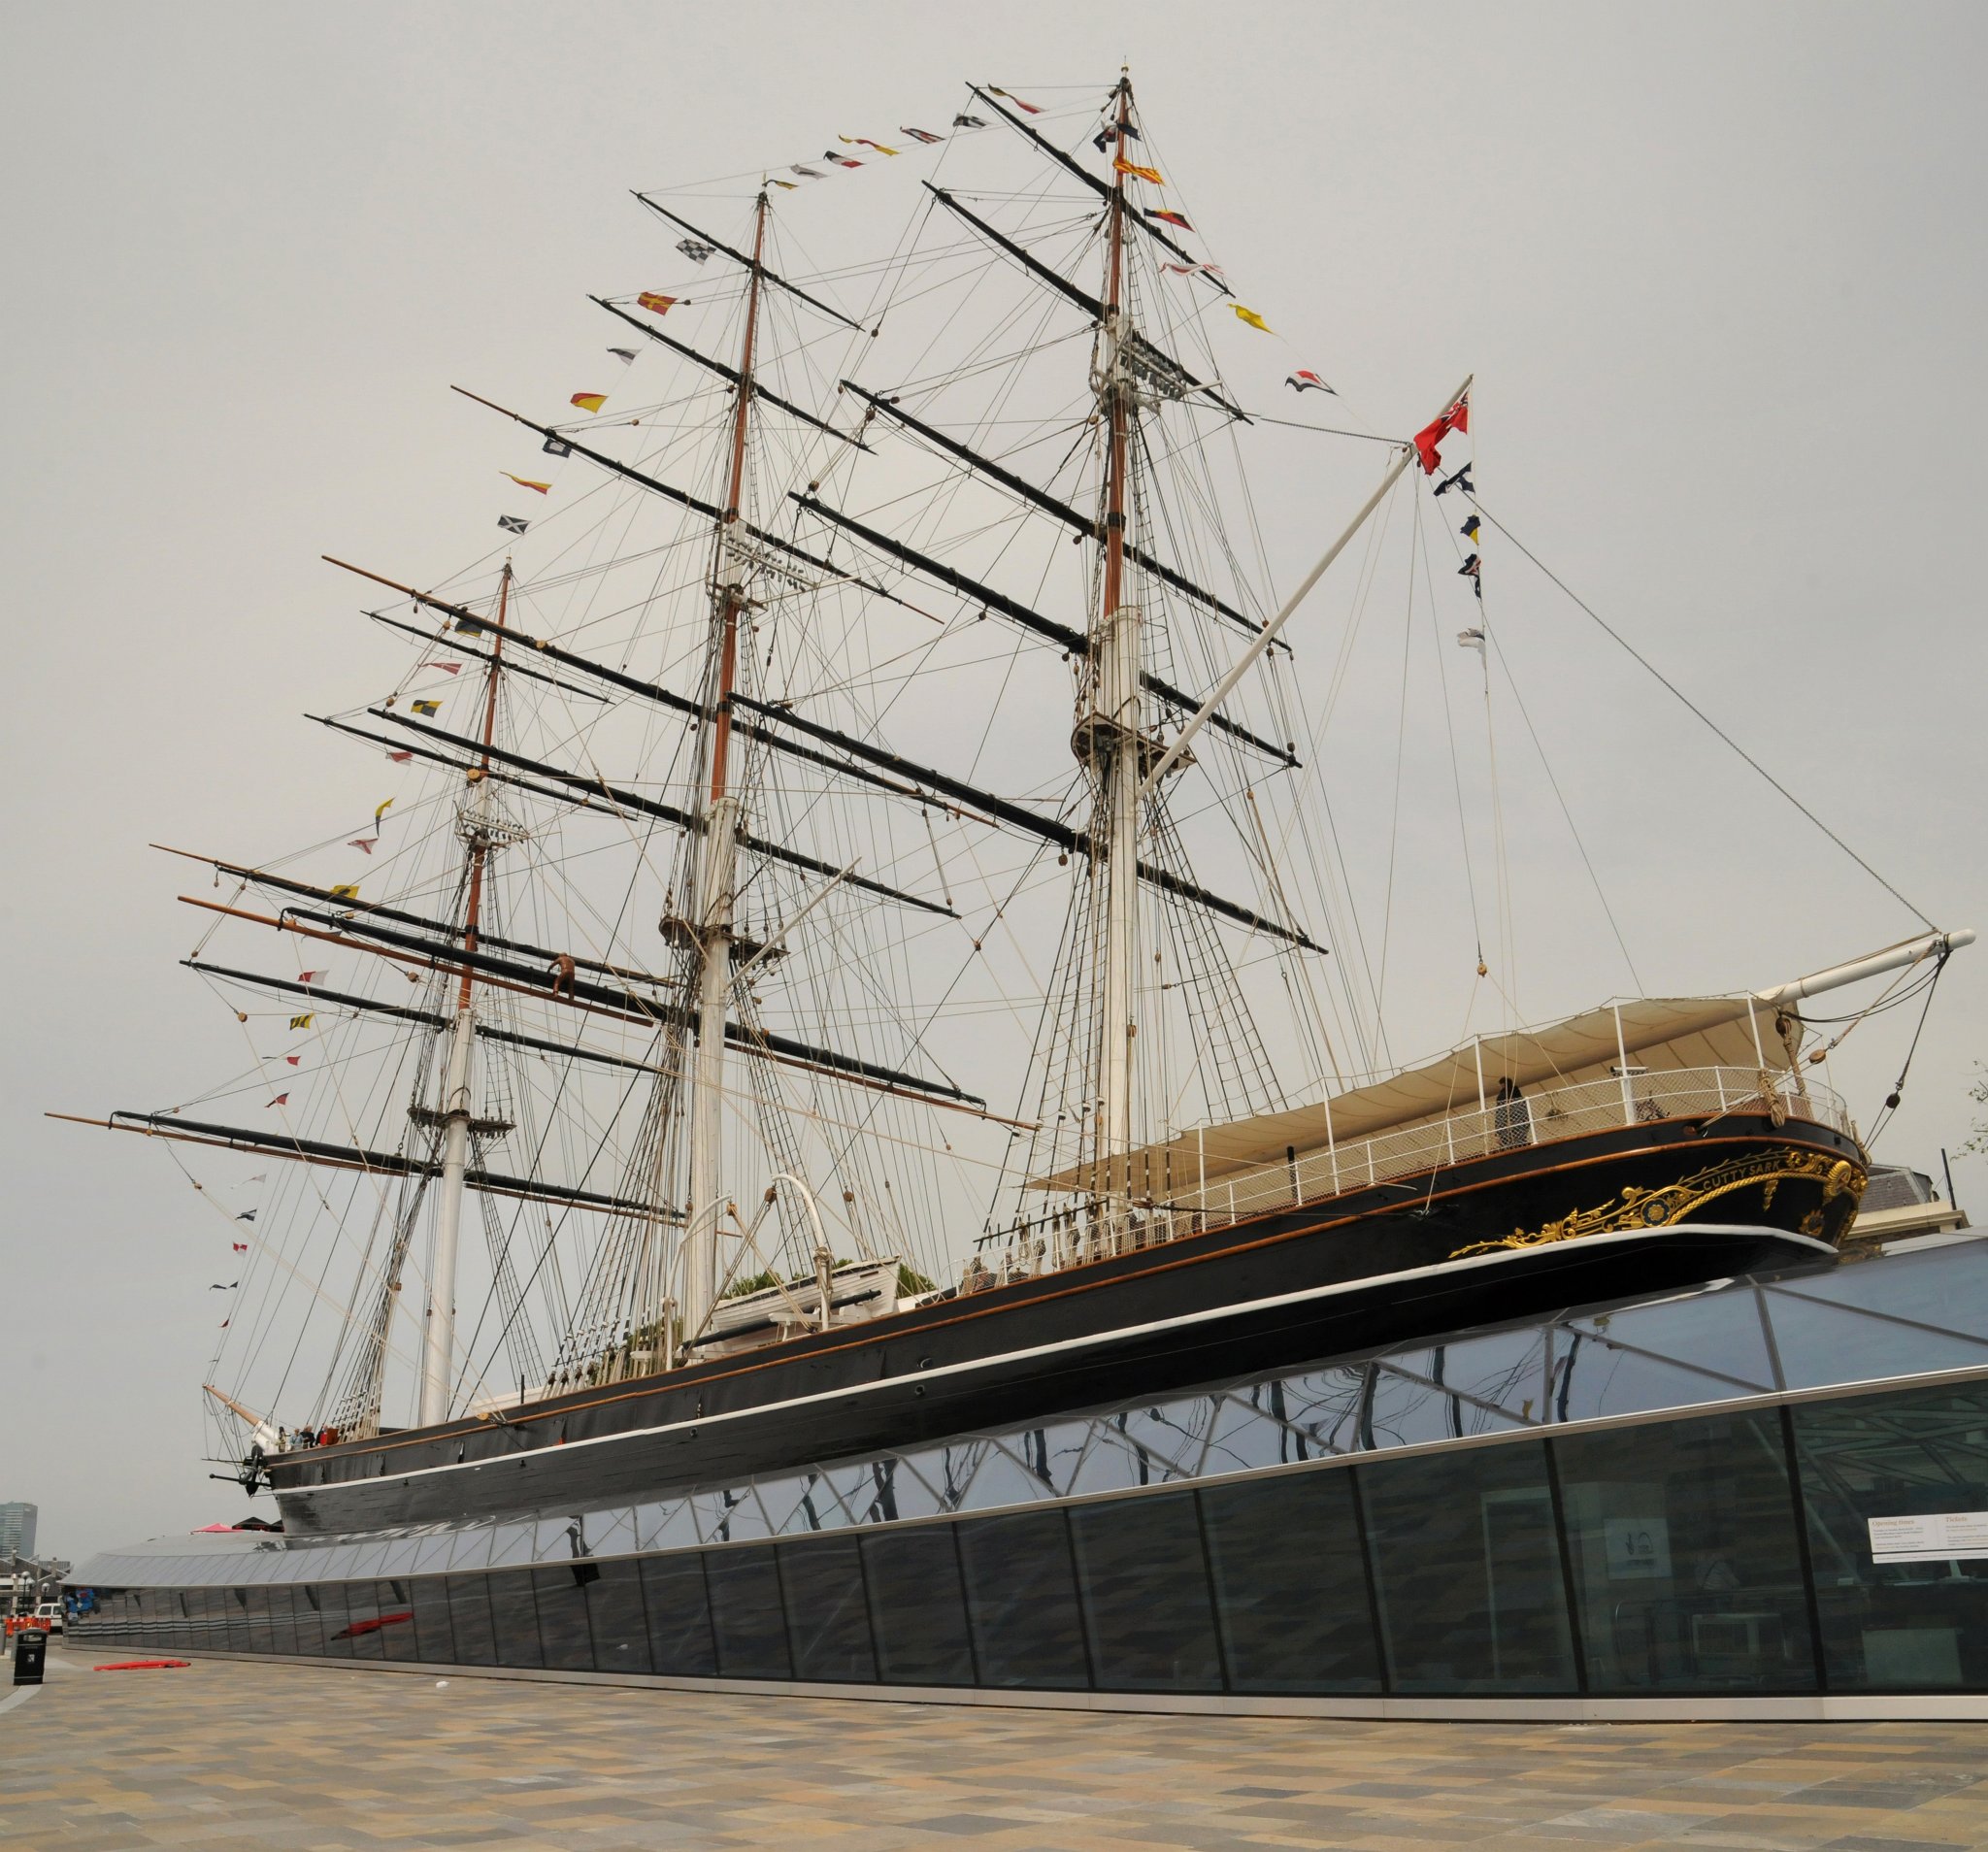 DSC_4280a_78,9,80_2.jpg - Cutty Sark je jeden z posledních čajových kliprů. Ve své době byla tato loď nazývána Královnou oceánů, nicméně v překladu její jméno vlastně znamená Krátká košile (košilka). Tato proslulá plachetnice, postavená v roce 1869, byla nejrychlejší velkou plachetnicí na světě. Loď je v současné době umístěna v lodním muzeu na břehu Temže v londýnské čtvrti Greenwich. 21. května 2007 byla těžce poškozena požárem během rekonstrukčních prací.